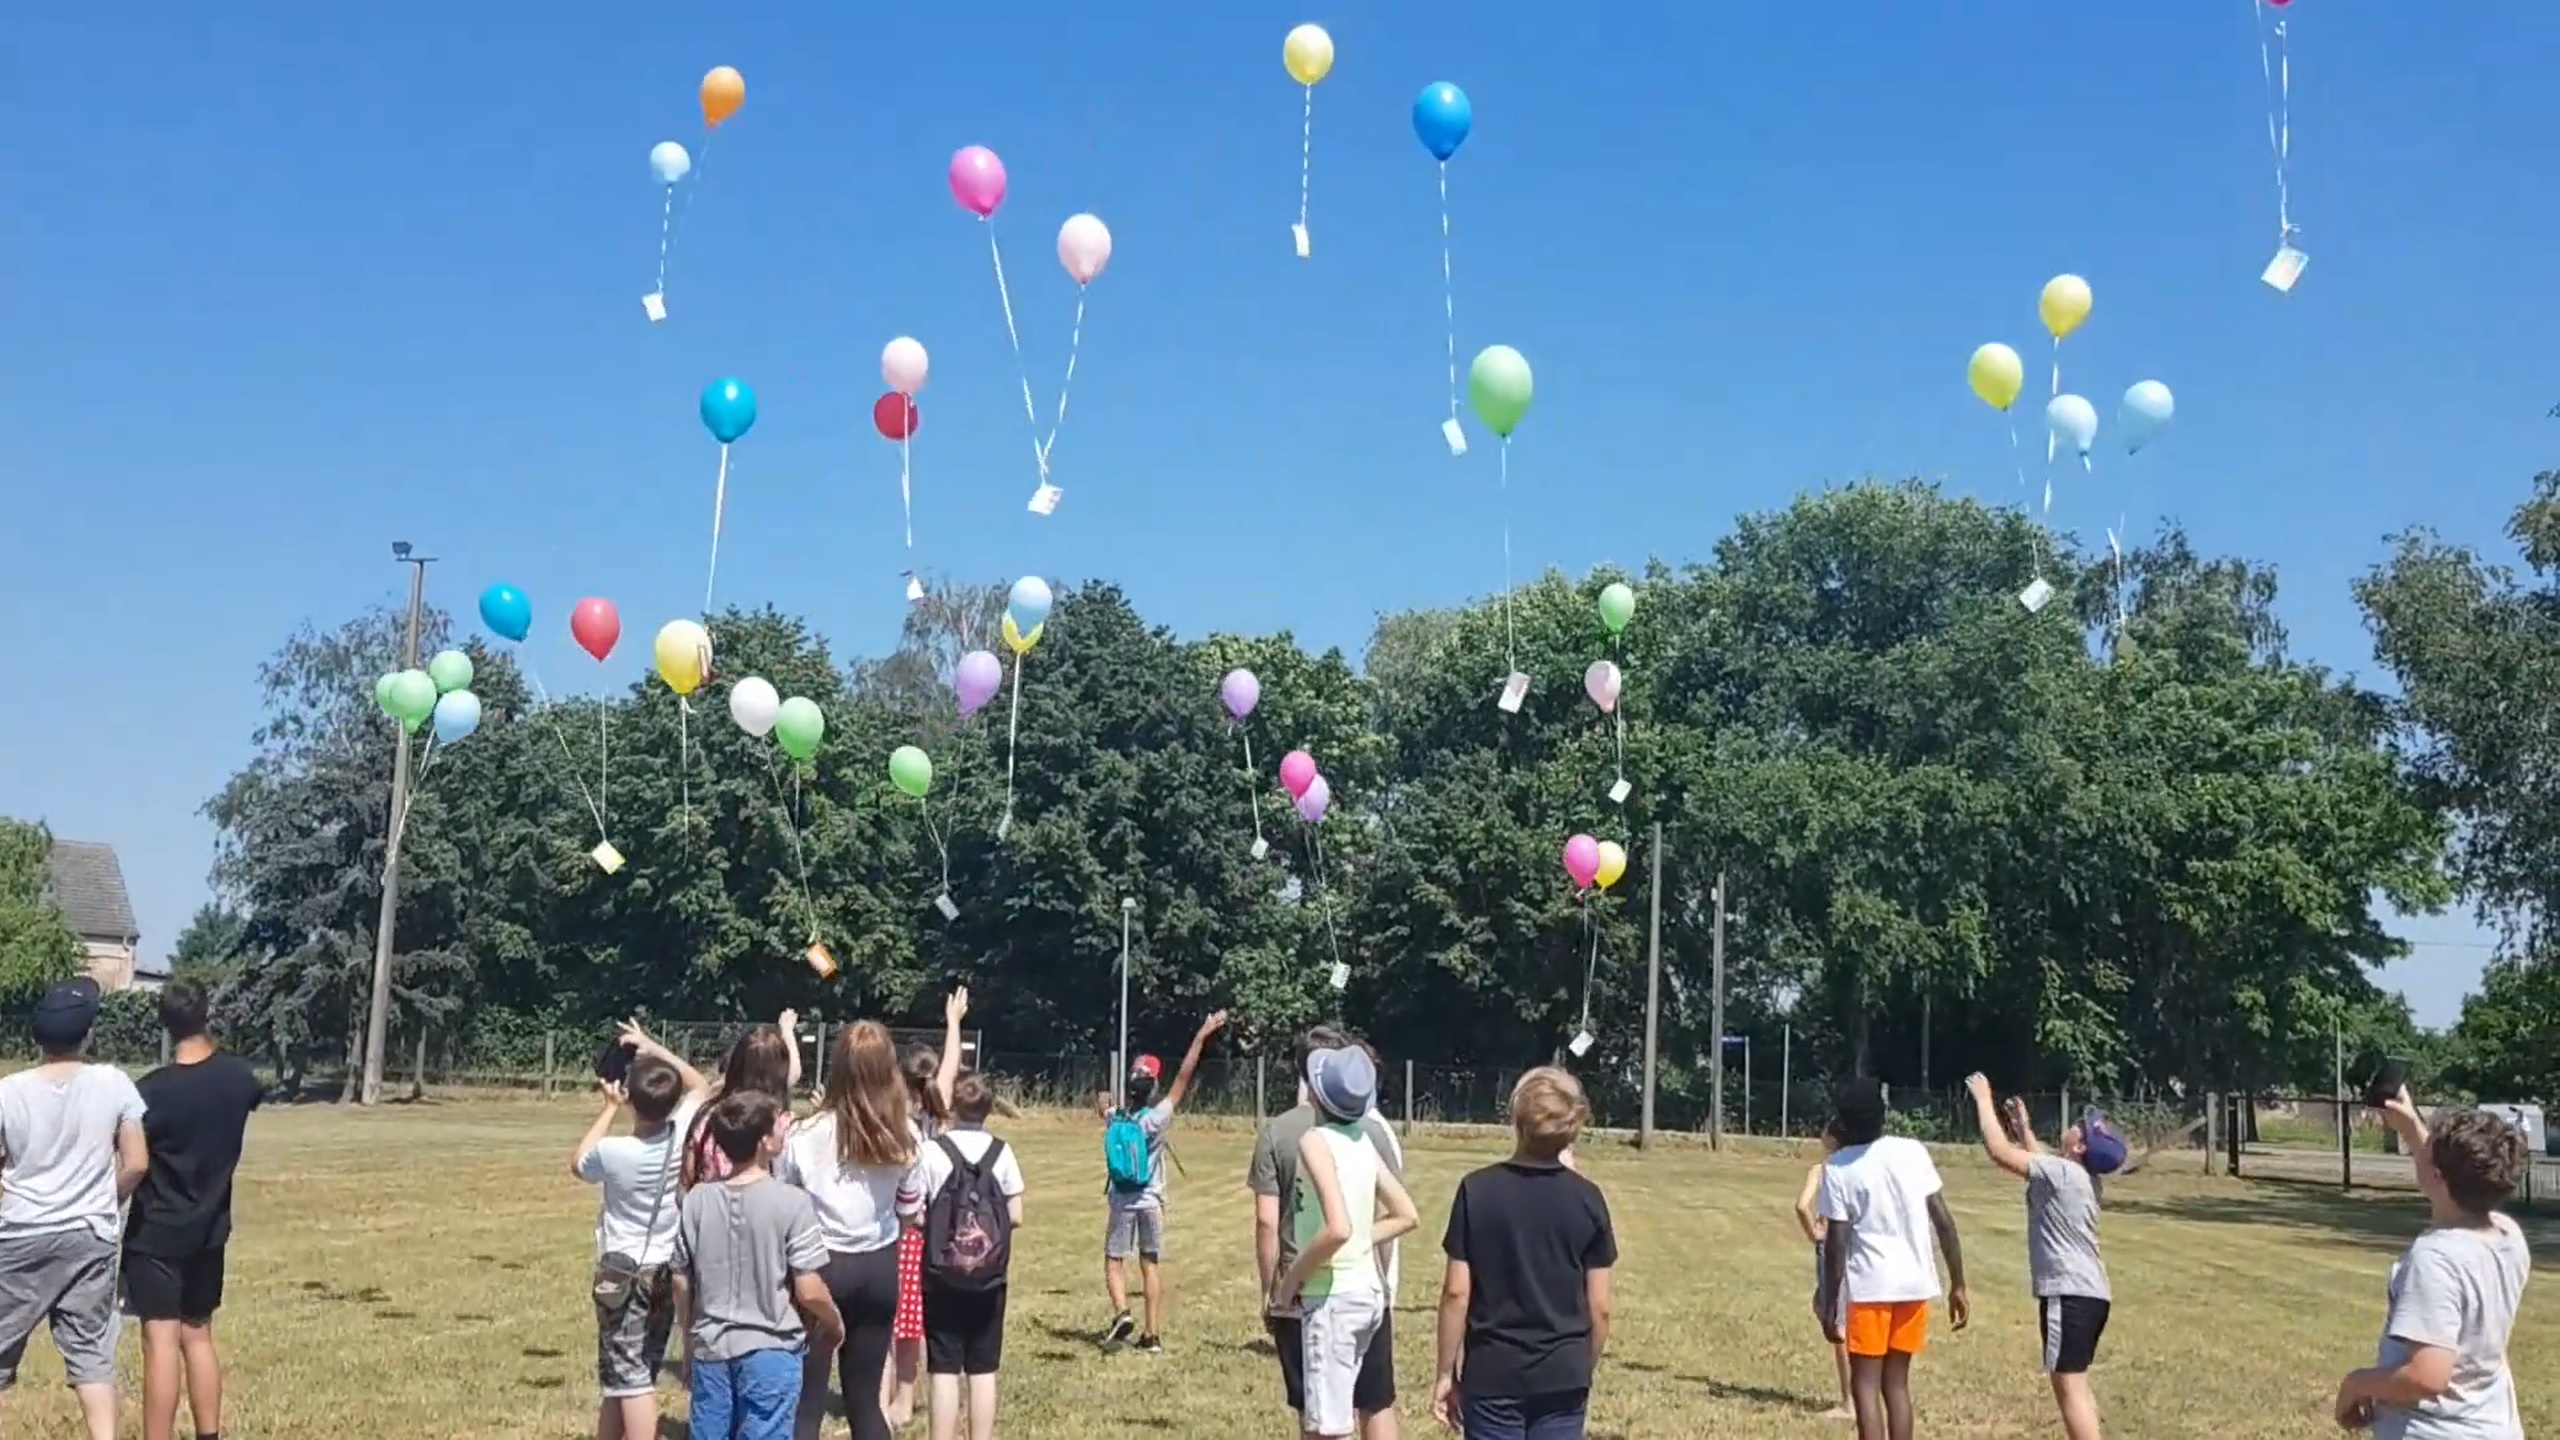 Auf dem Bild sieht man eine Gruppe von Kindern die auf einem Feld stehen und Luftballons mit Zetteln daran in den Himmel steigen lassen. Das Bild gehört zum Beitrag v